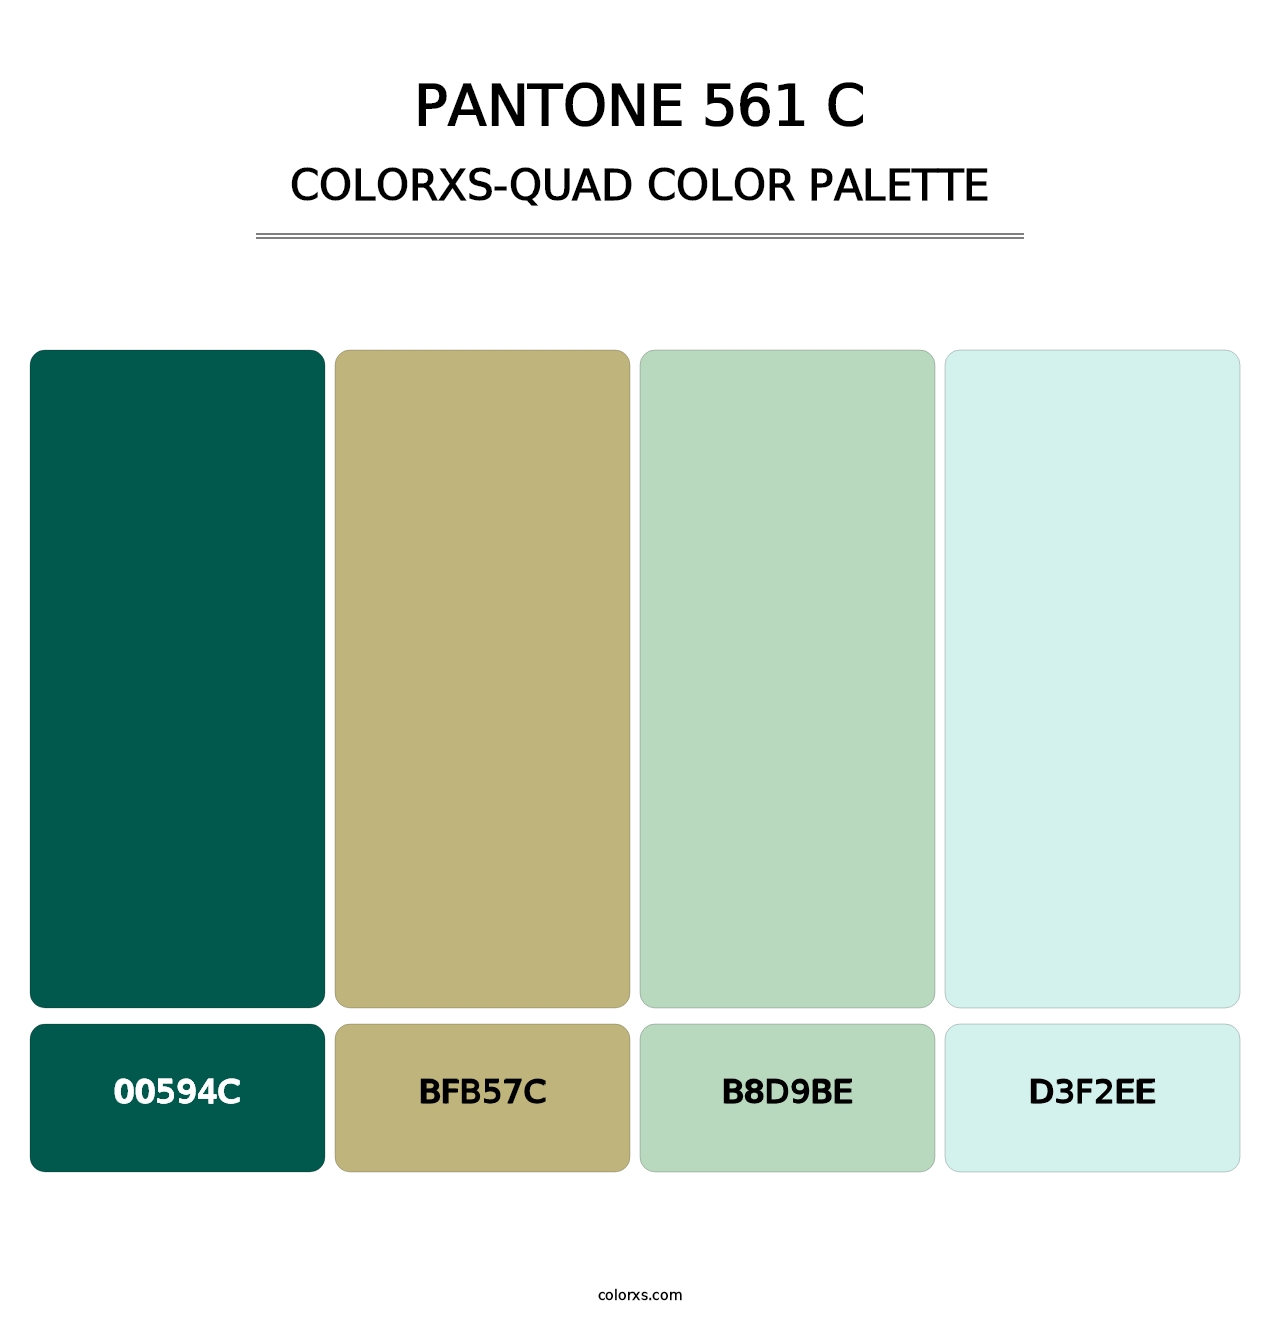 PANTONE 561 C - Colorxs Quad Palette